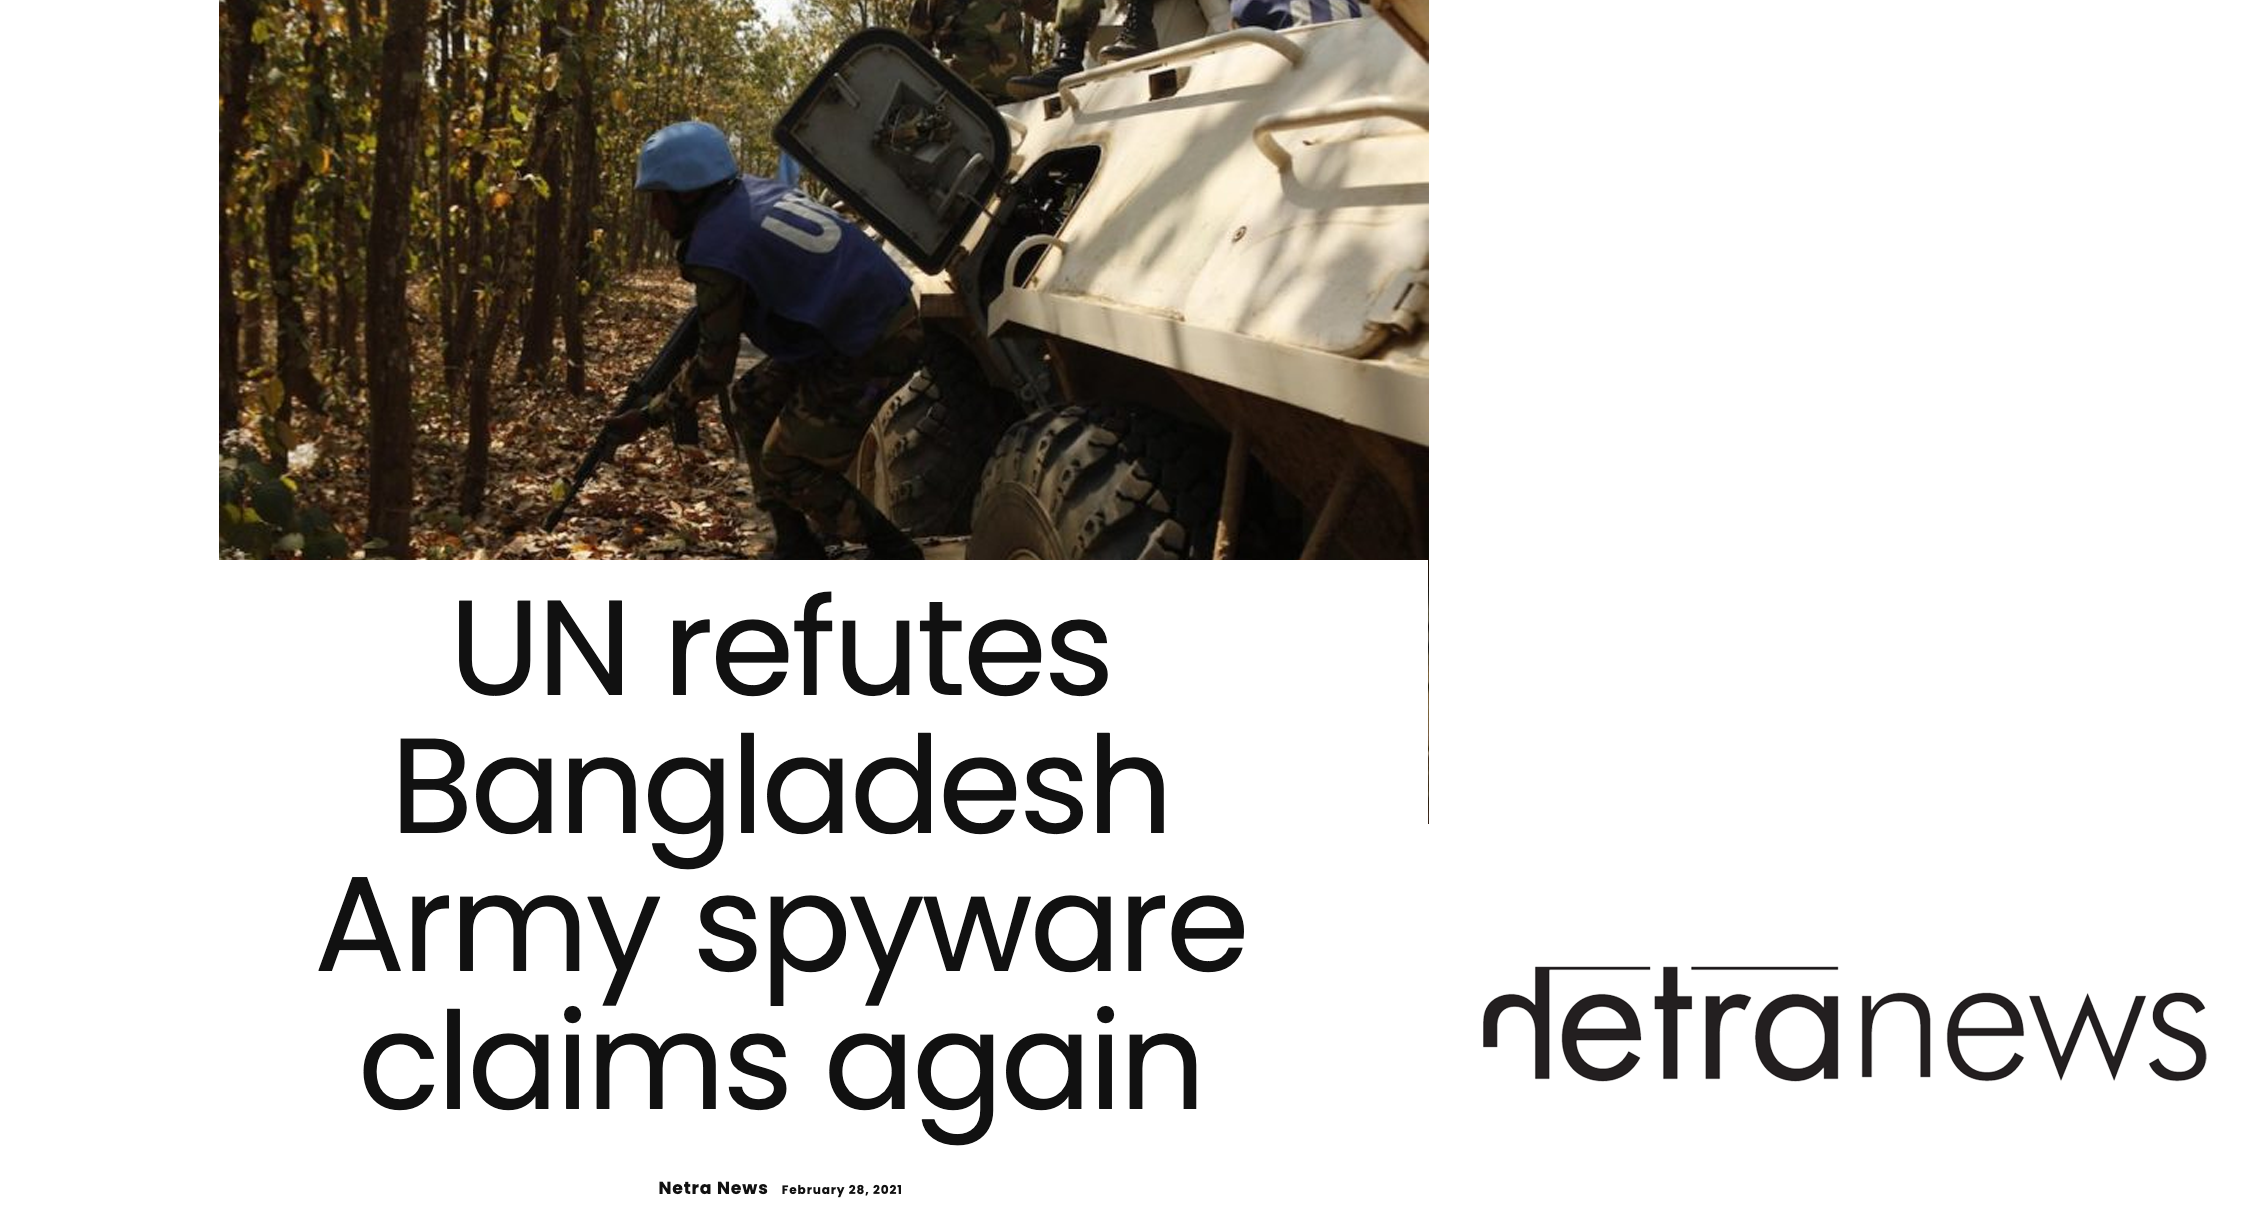 UN refutes Bangladesh Army spyware claims again